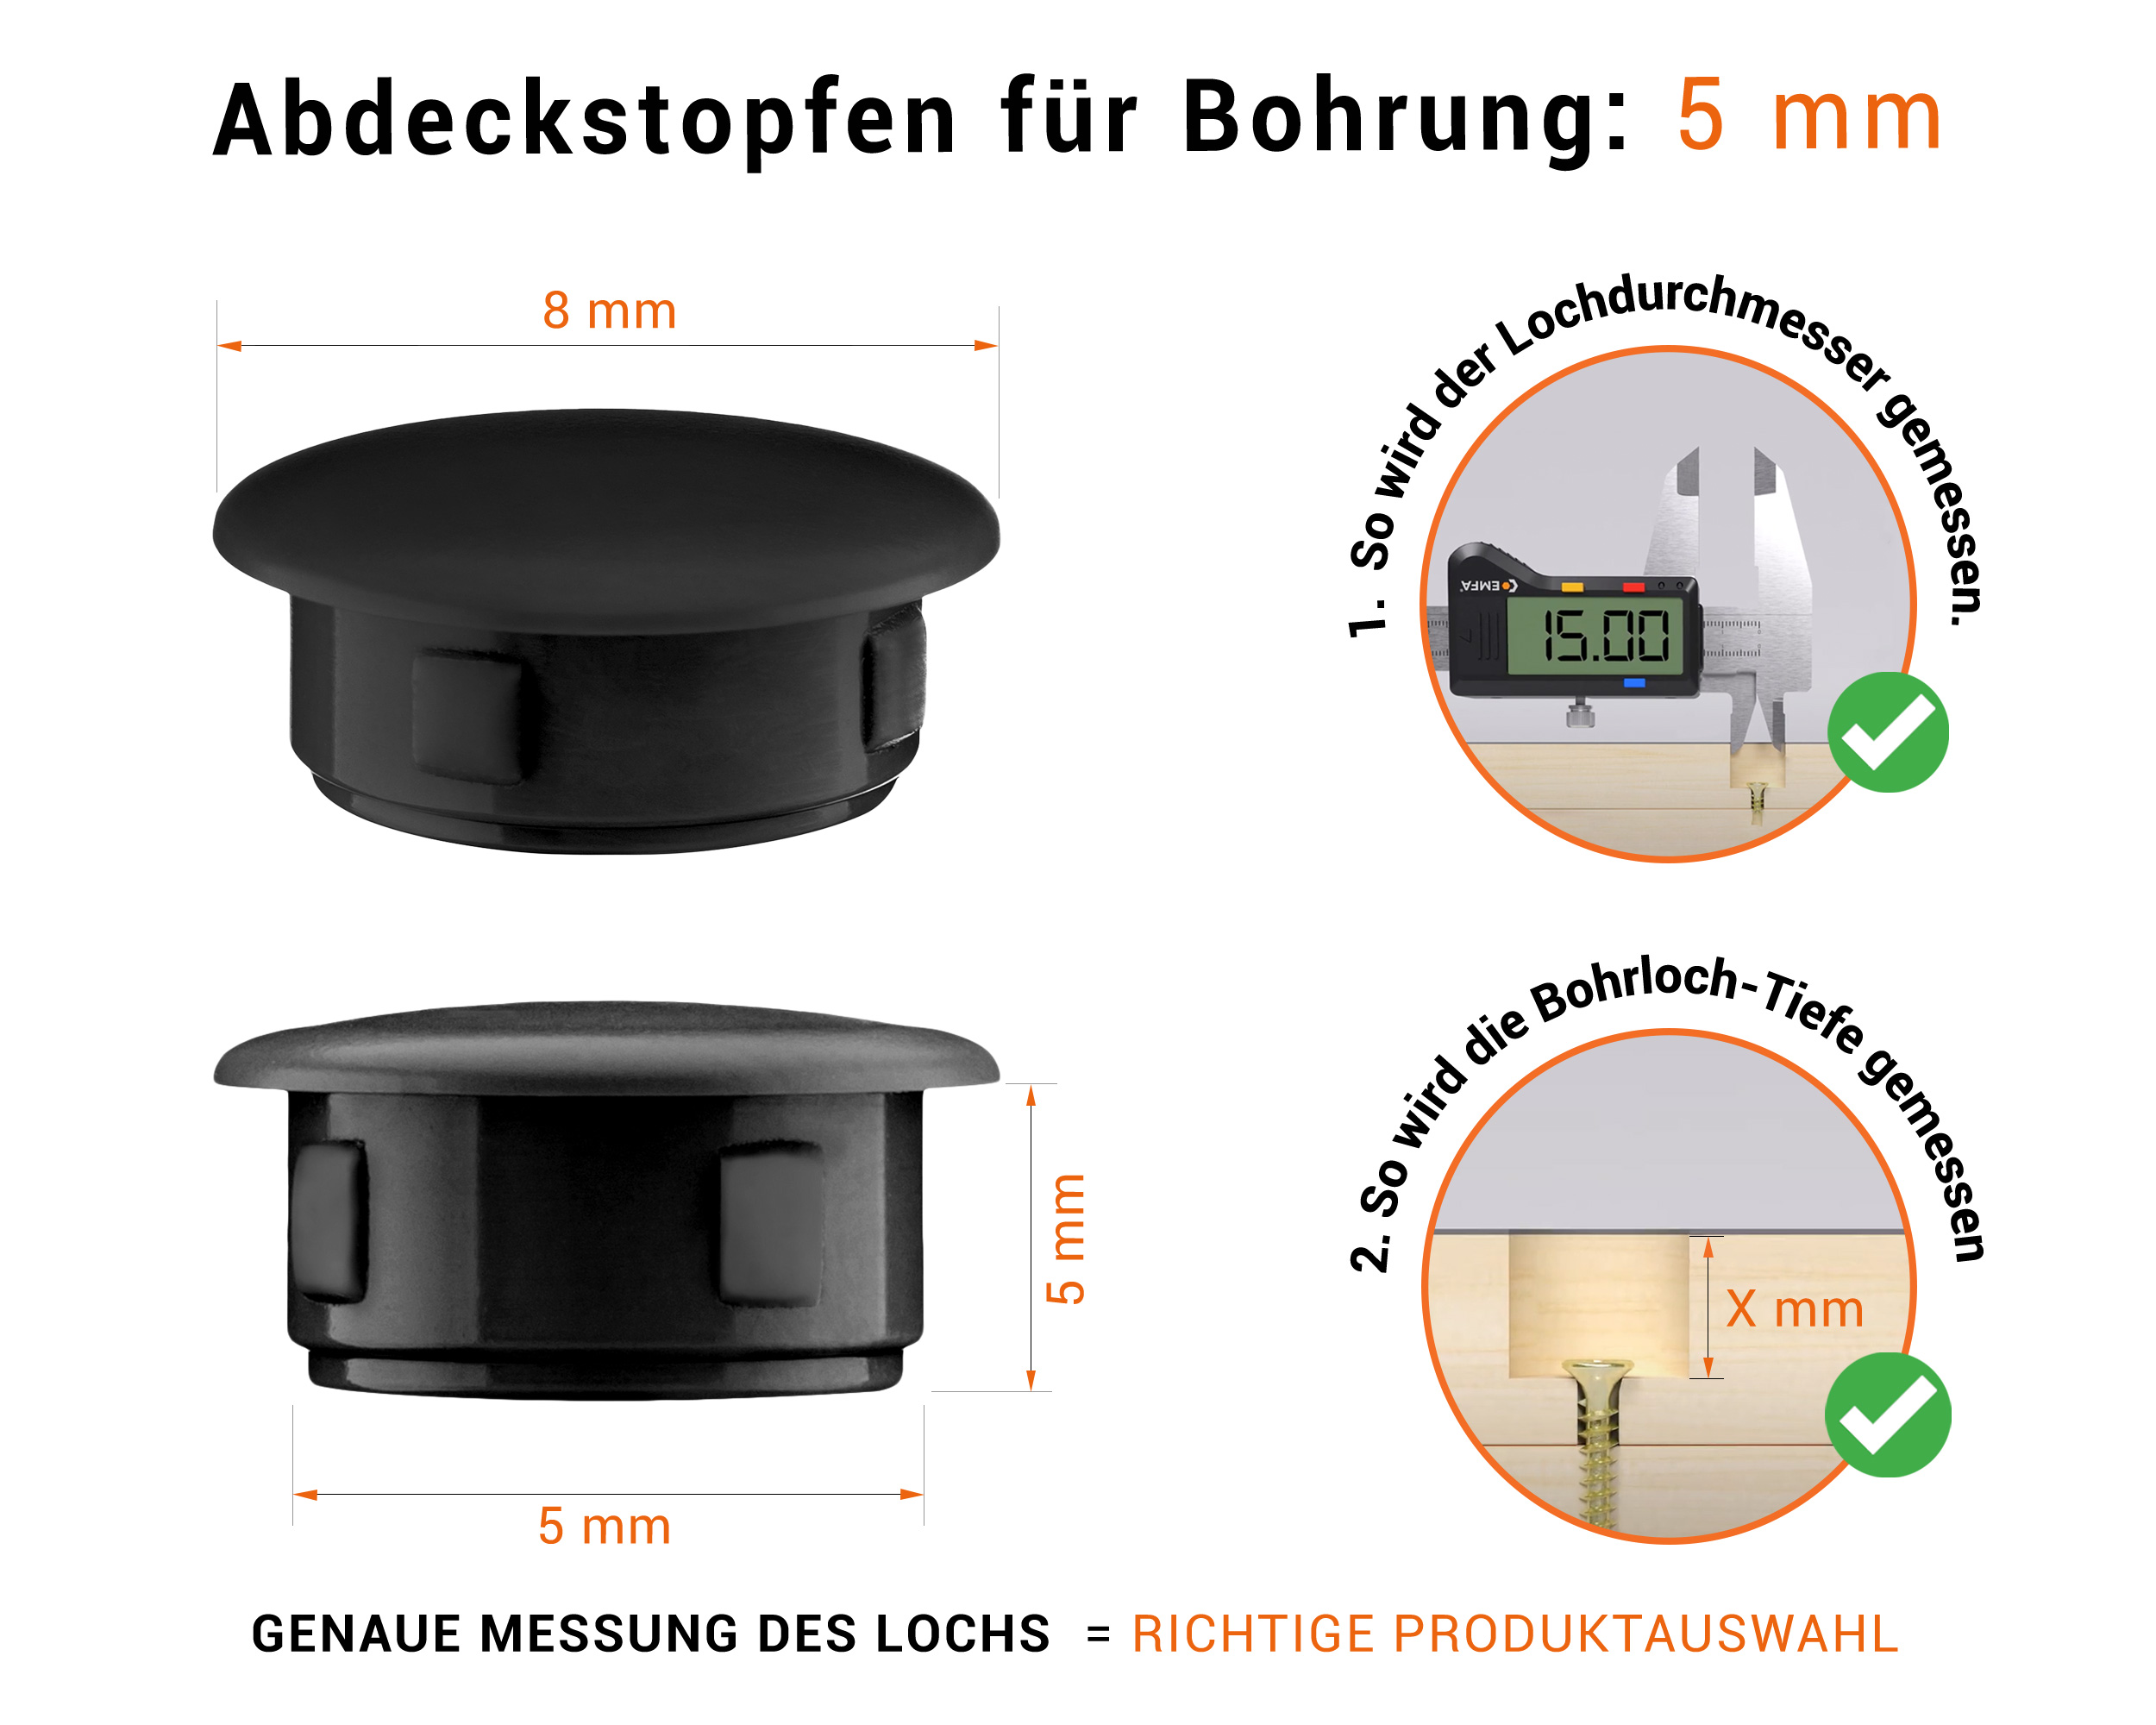 Schwarze Blindstopfen aus Kunststoff für Bohrung 5 mm mm mit technischen Abmessungen und Anleitung für korrekte Messung